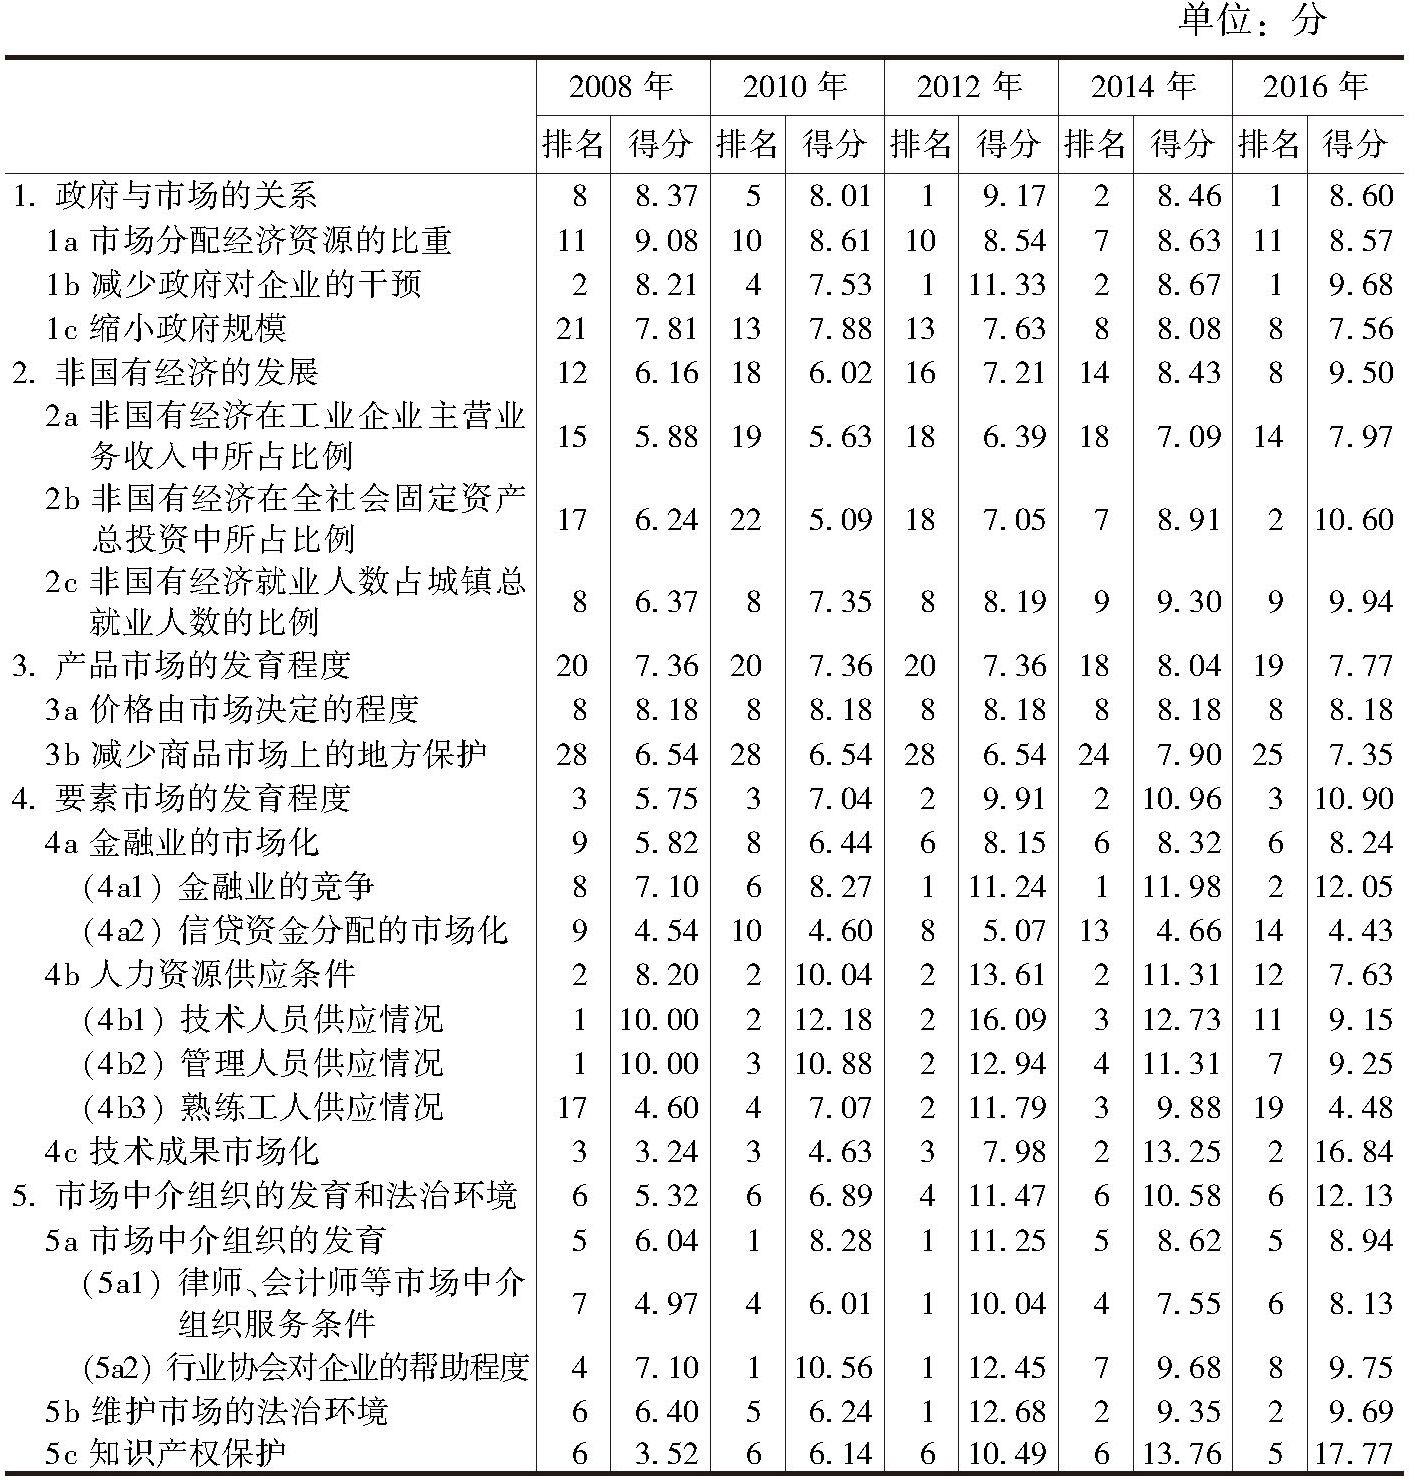 天津市场化各方面指数和分项指数的排名及得分